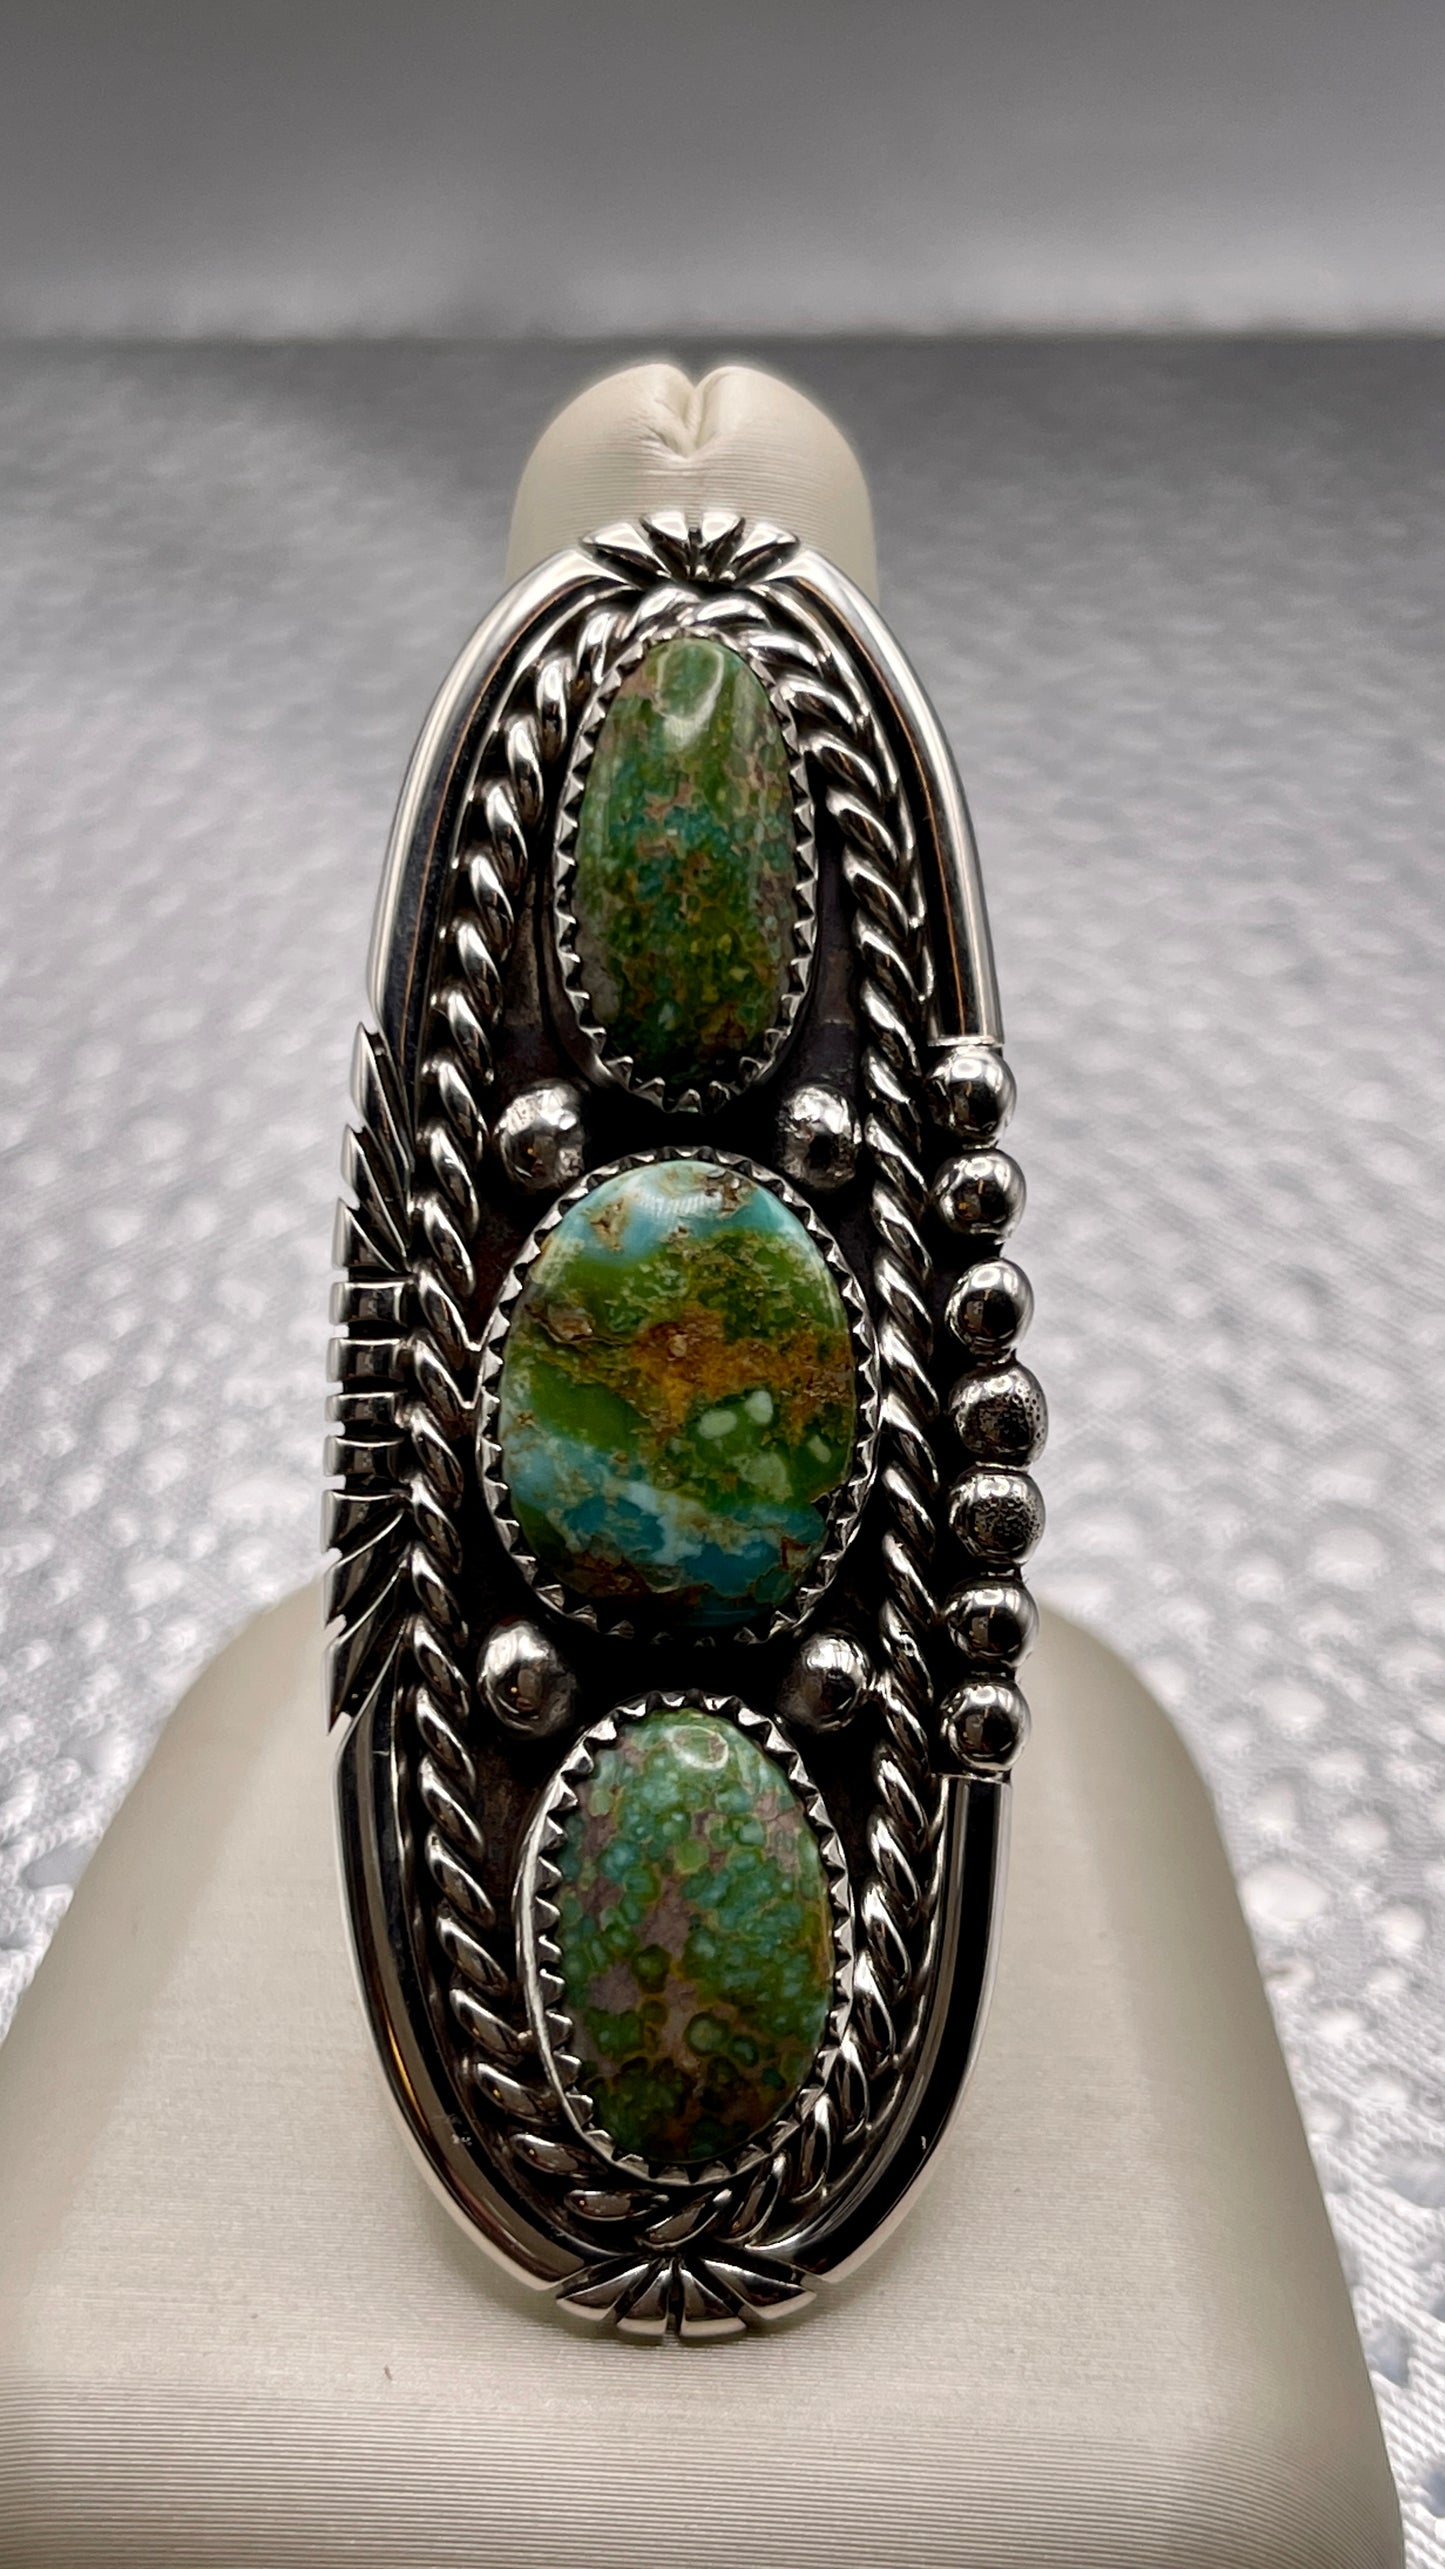 Desert Treasure: Kingman Green Turquoise set in Sterling Silver Ring